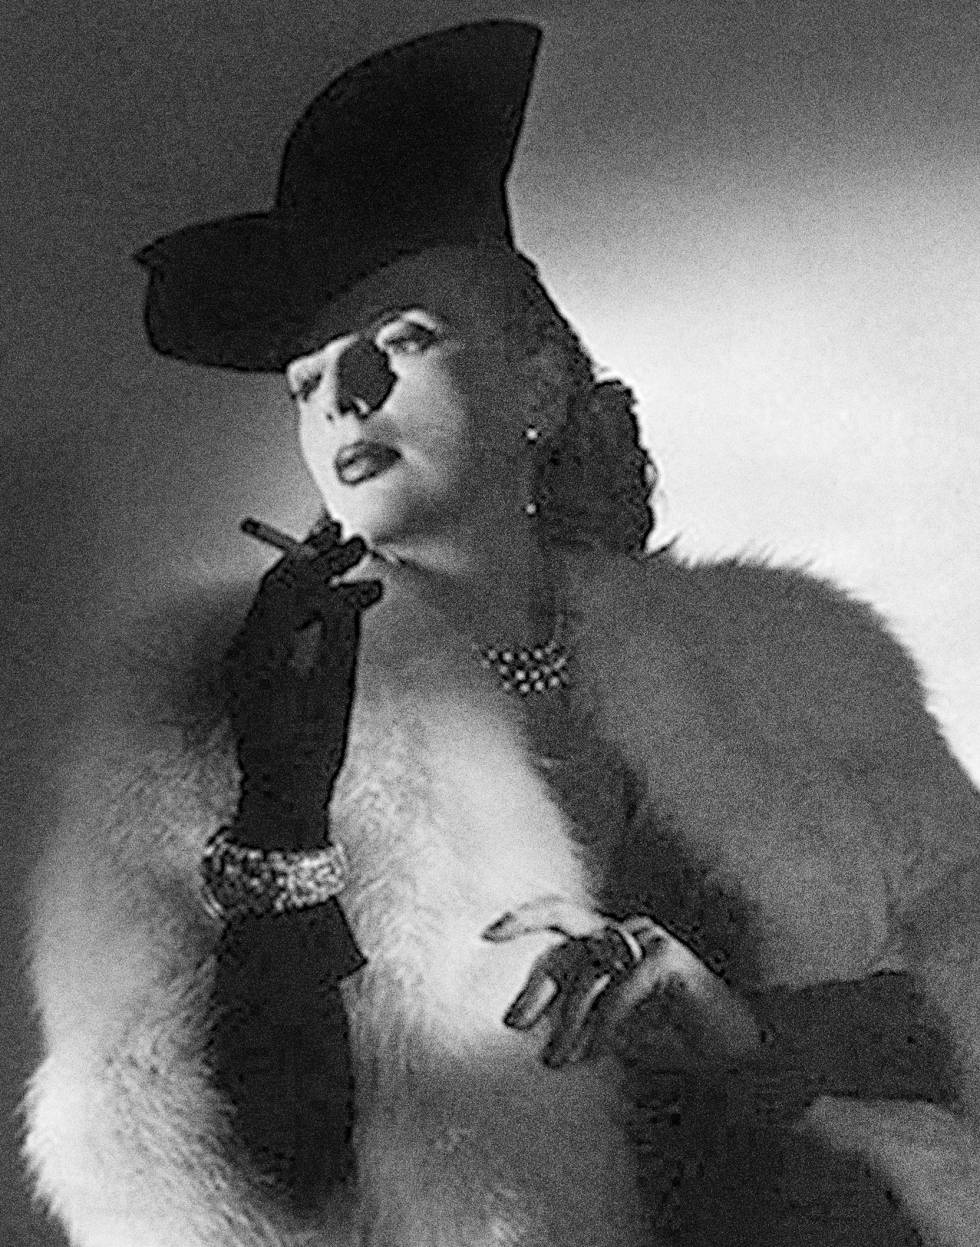 Tamara, piel, joyería, cigarro, del fotógrafo Joffé Monneret, de 1938.